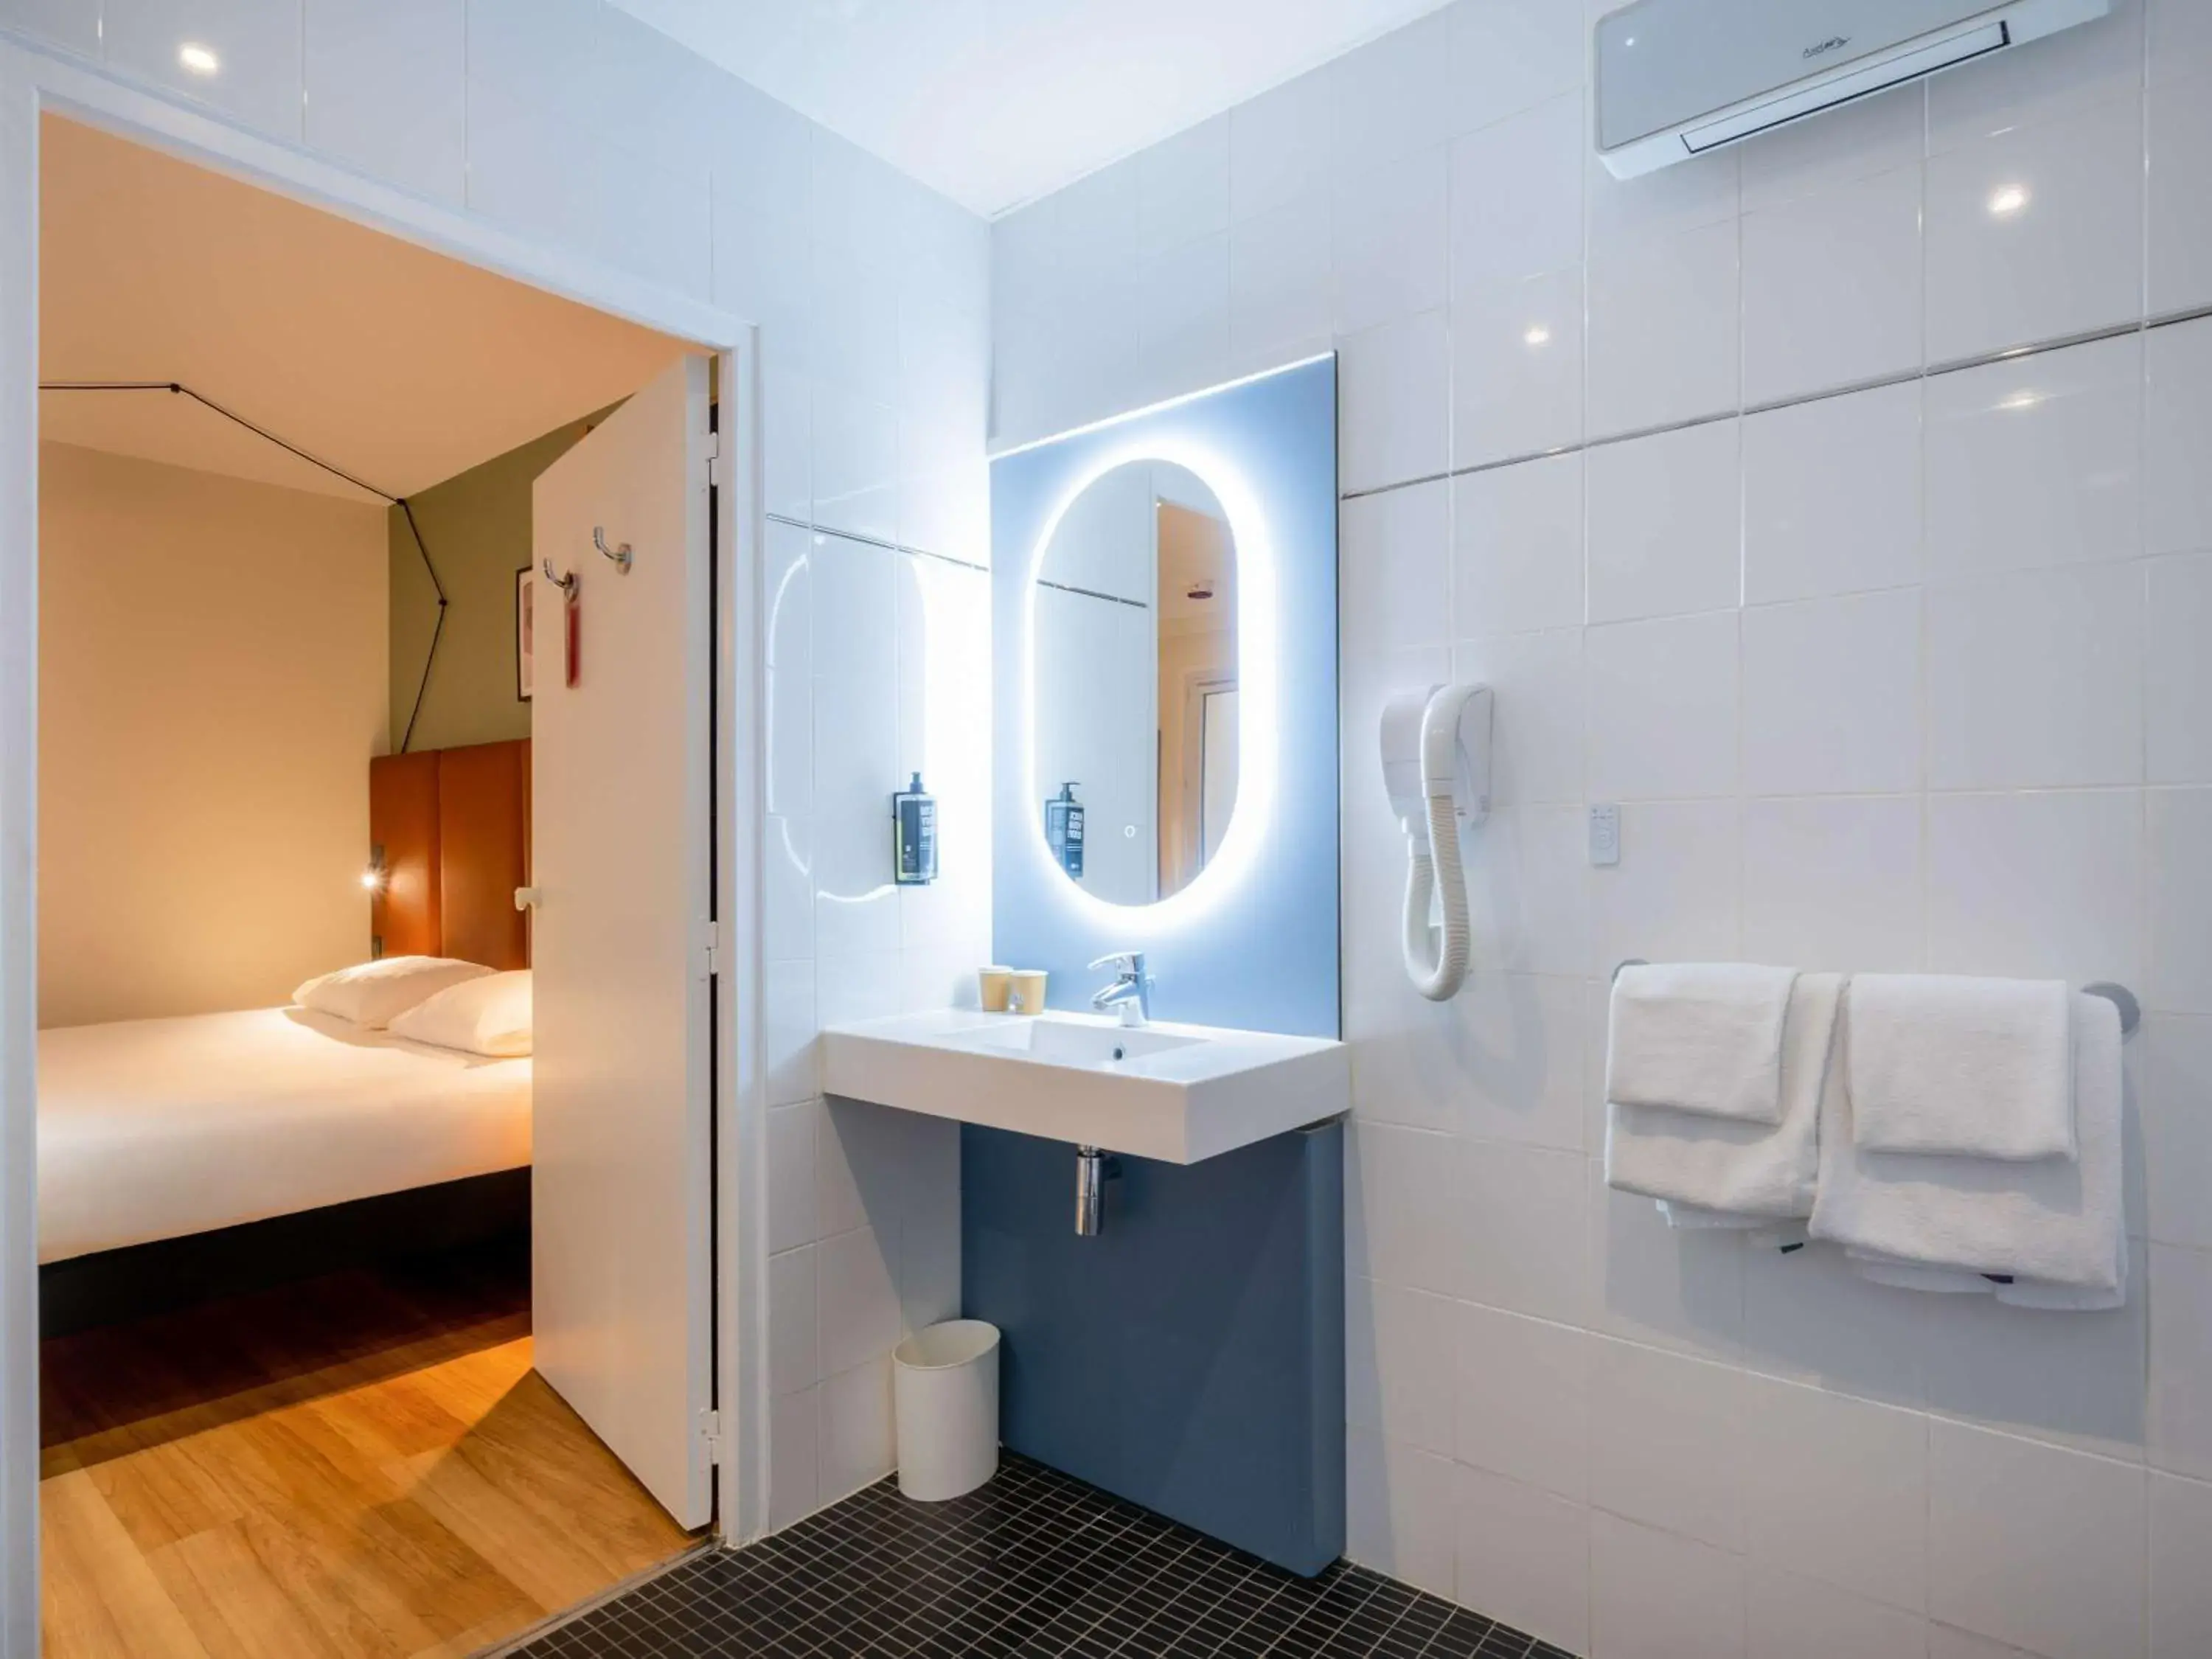 Bathroom in Hotel ibis Paris Pere Lachaise